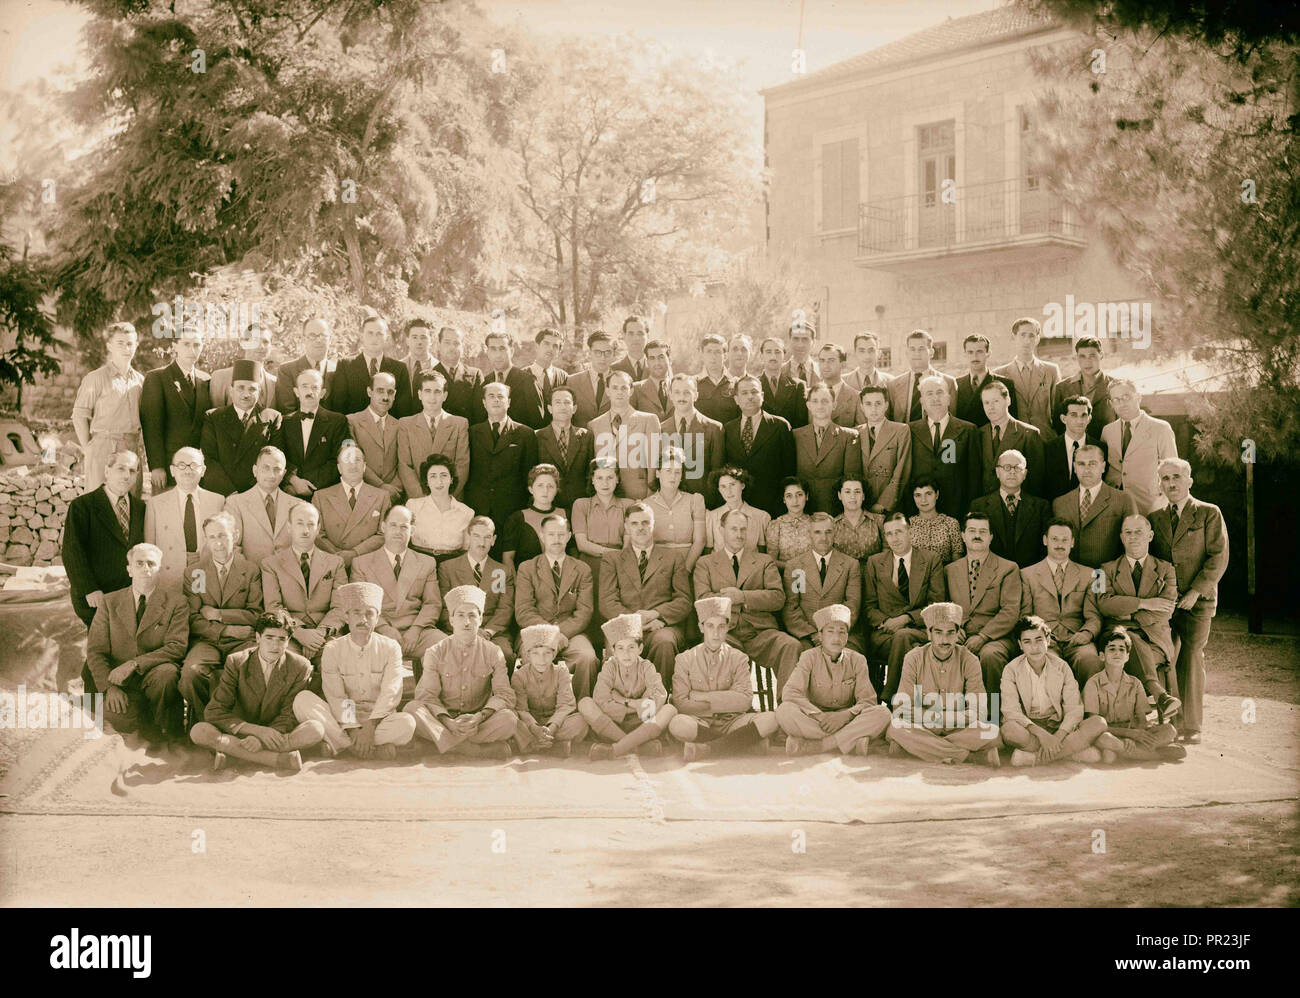 Gran grupo del Departamento de Salud Pública y los laboratorios 1944, Oriente Medio, Israel Foto de stock